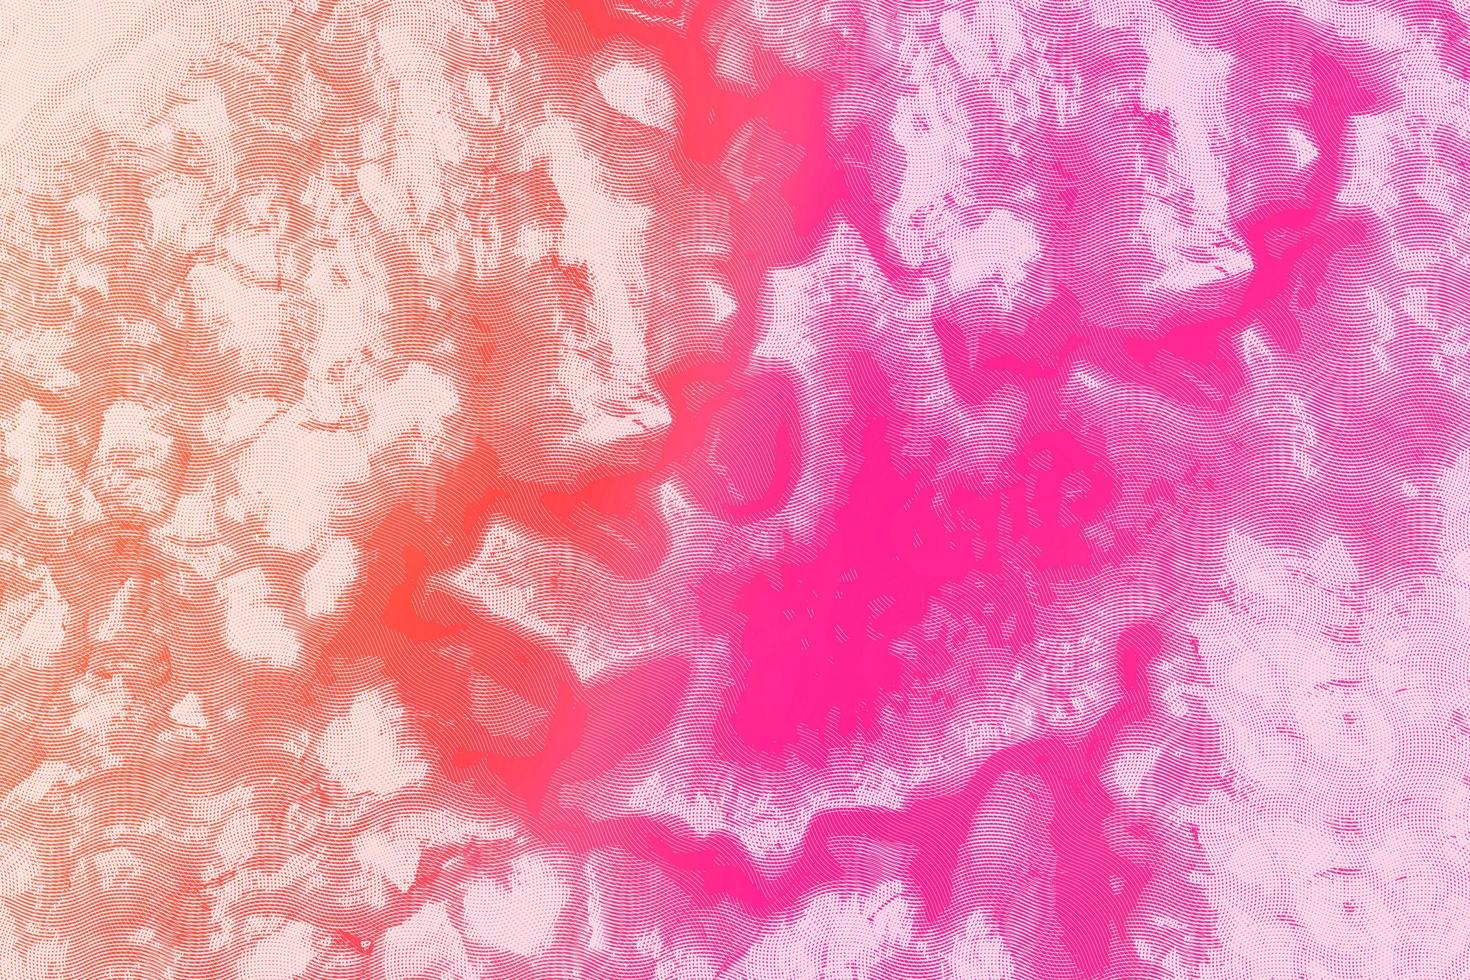 Corbata roja y morada muere textura de acuarela fondo de grunge abstracto con textura envejecida angustiada y pincel foto